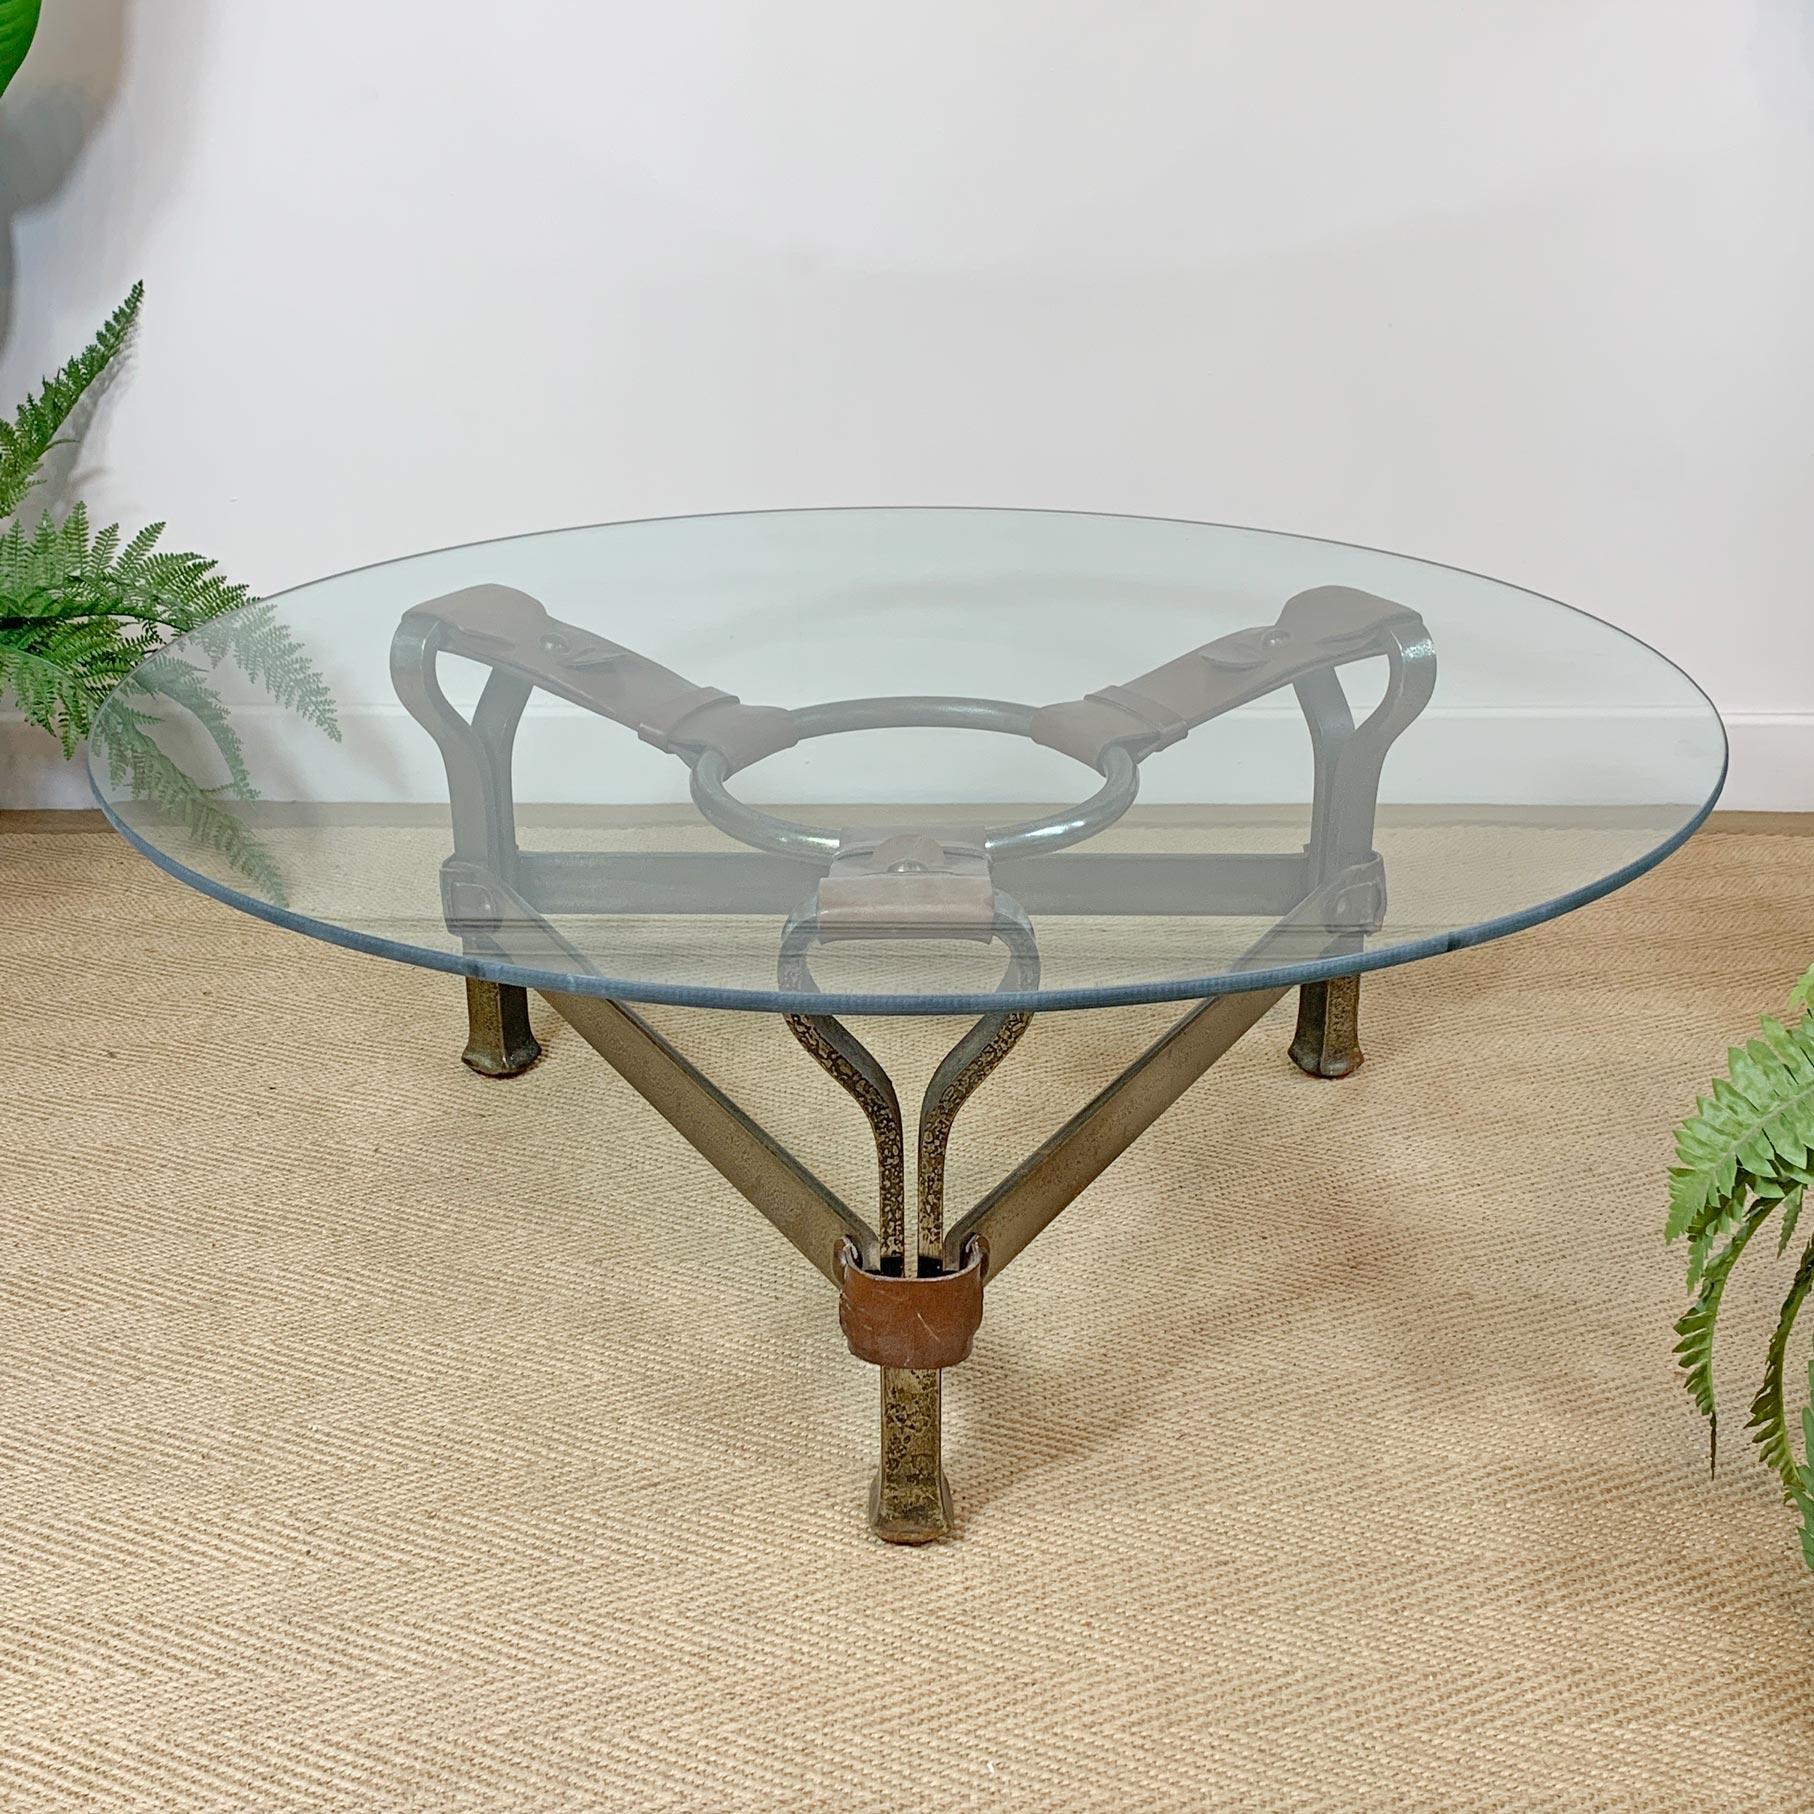 Superbe table basse ou table centrale brutaliste en cuir et acier, conçue par Jean-Pierre Ryckaert en France dans les années 1950. Les épaisses lanières de cuir entourent les pieds en acier courbé et l'anneau central en acier. Un magnifique exemple